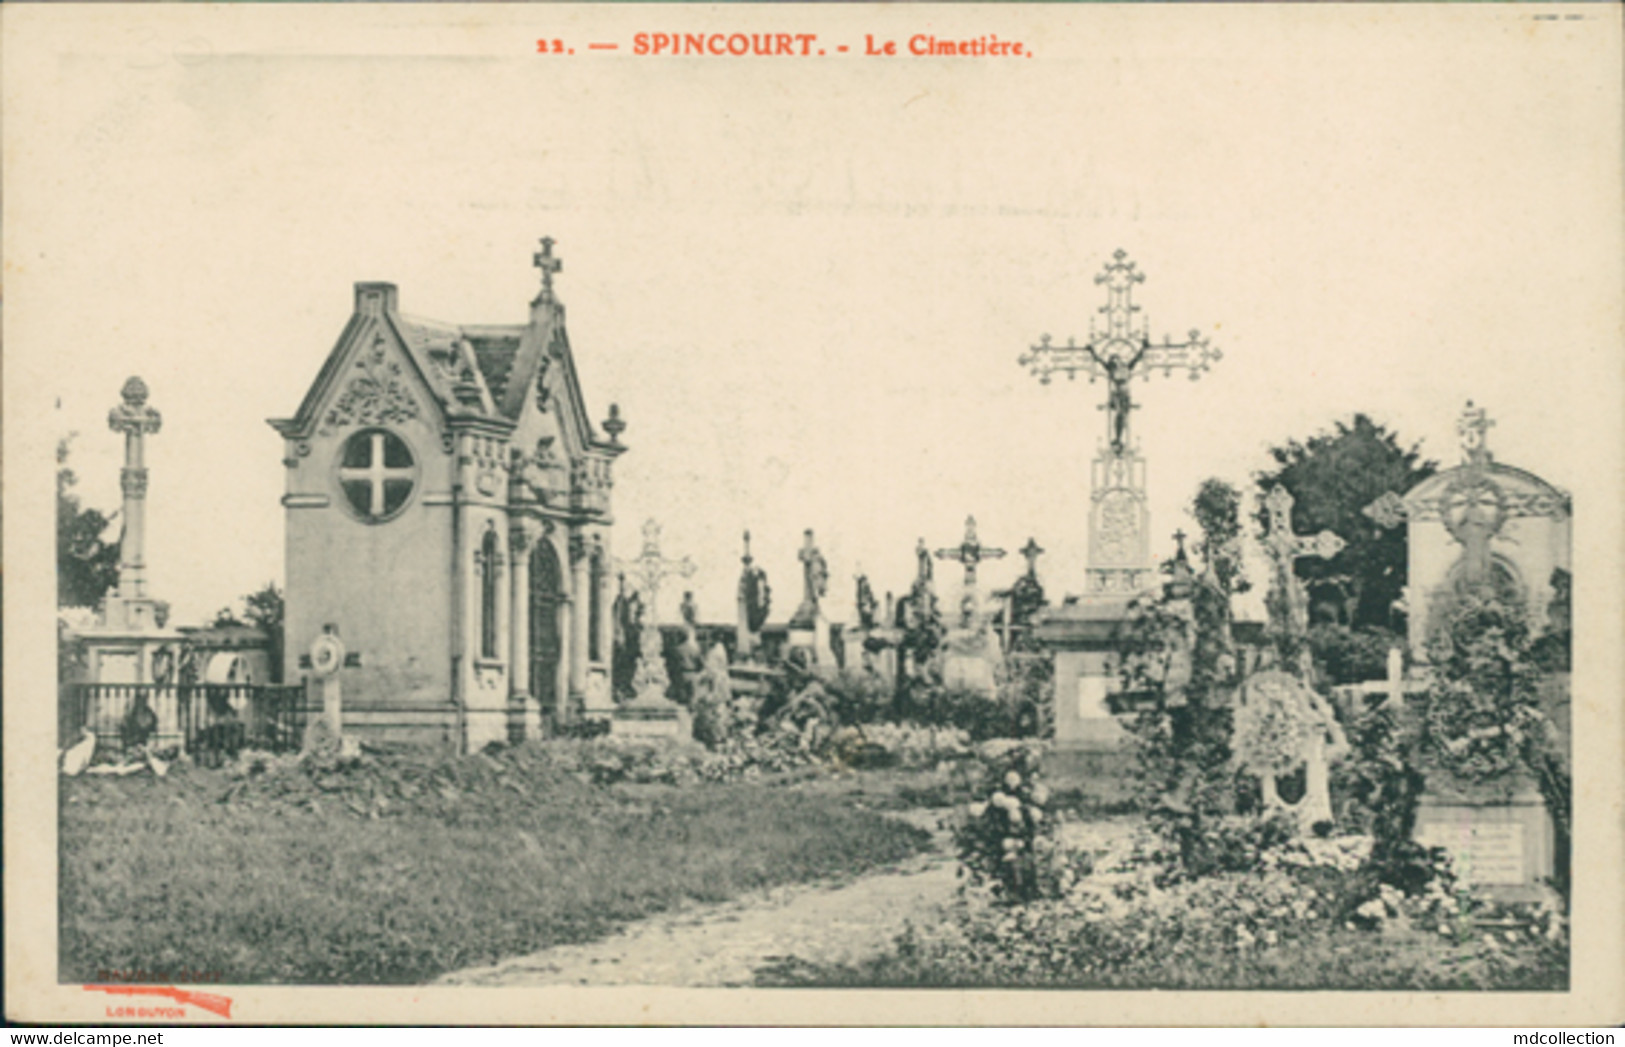 55 SPINCOURT / Le Cimetiere / - Spincourt